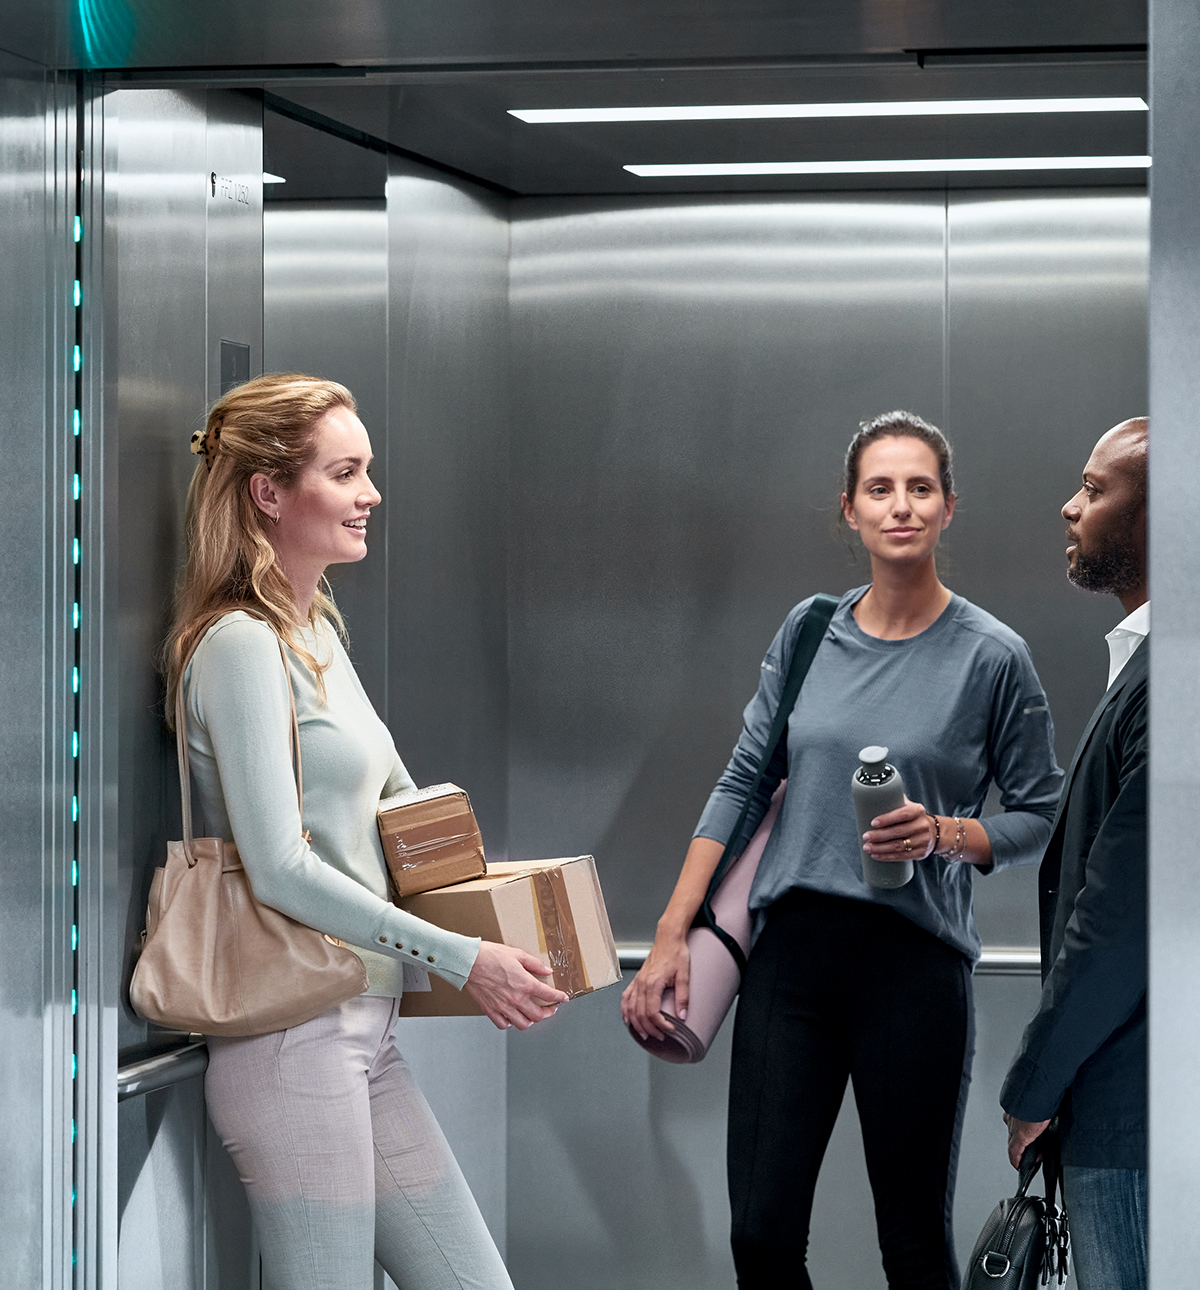 Haushahn Menschen - drei Personen im Aufzug in Gesprächssituation